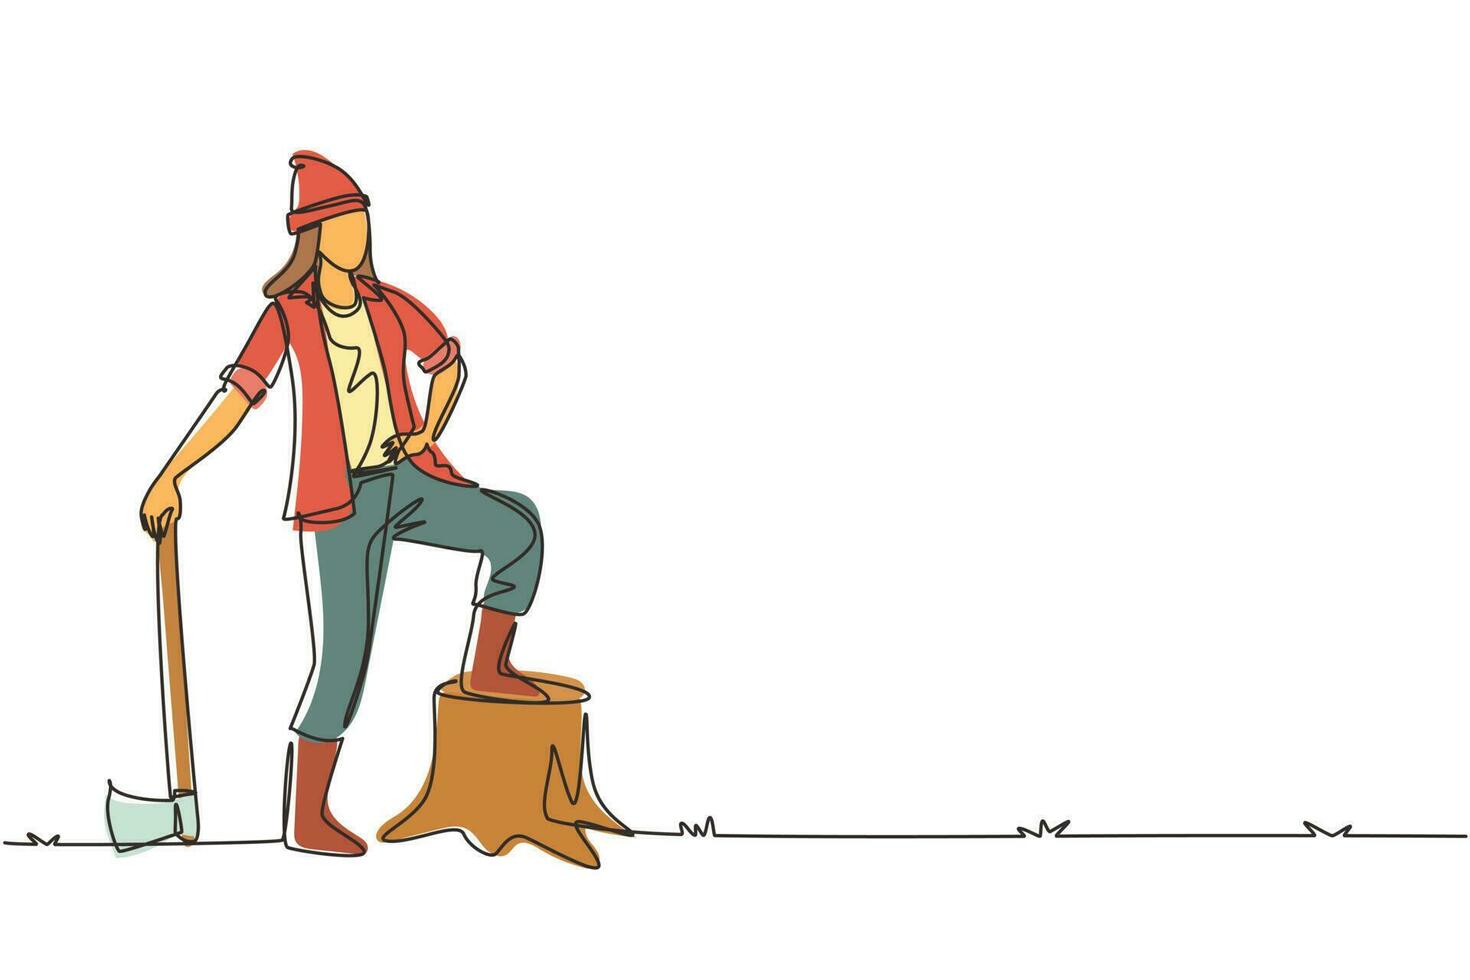 enda en rad ritning kvinna skogshuggare bär rutig skjorta, jeans, stövlar och mössa. står med yxa och poserar med ena foten på en stubbe. kontinuerlig linje rita design vektorillustration vektor